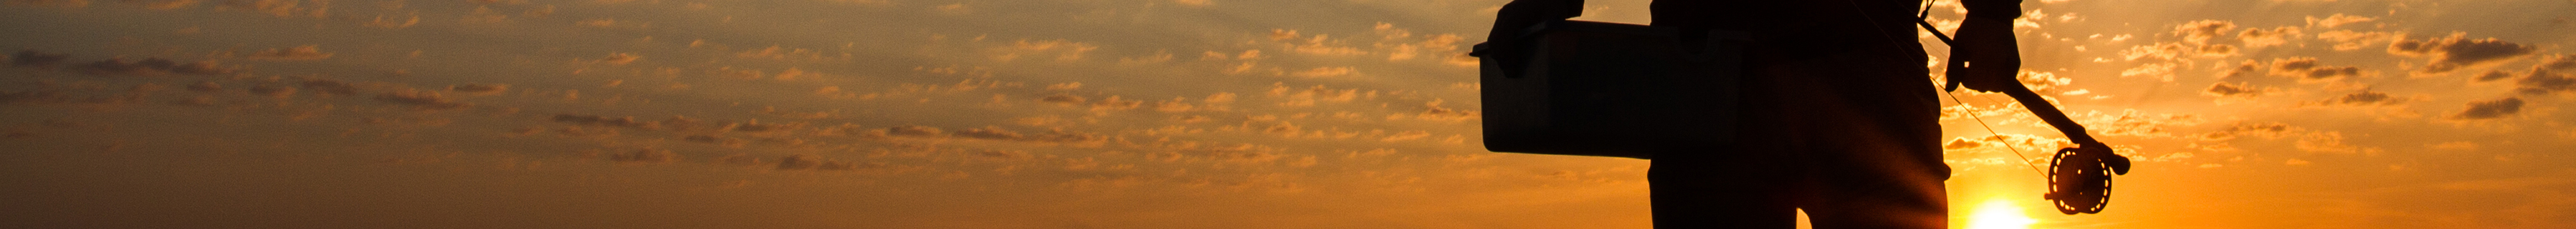 topbanner - solnedgang.jpg